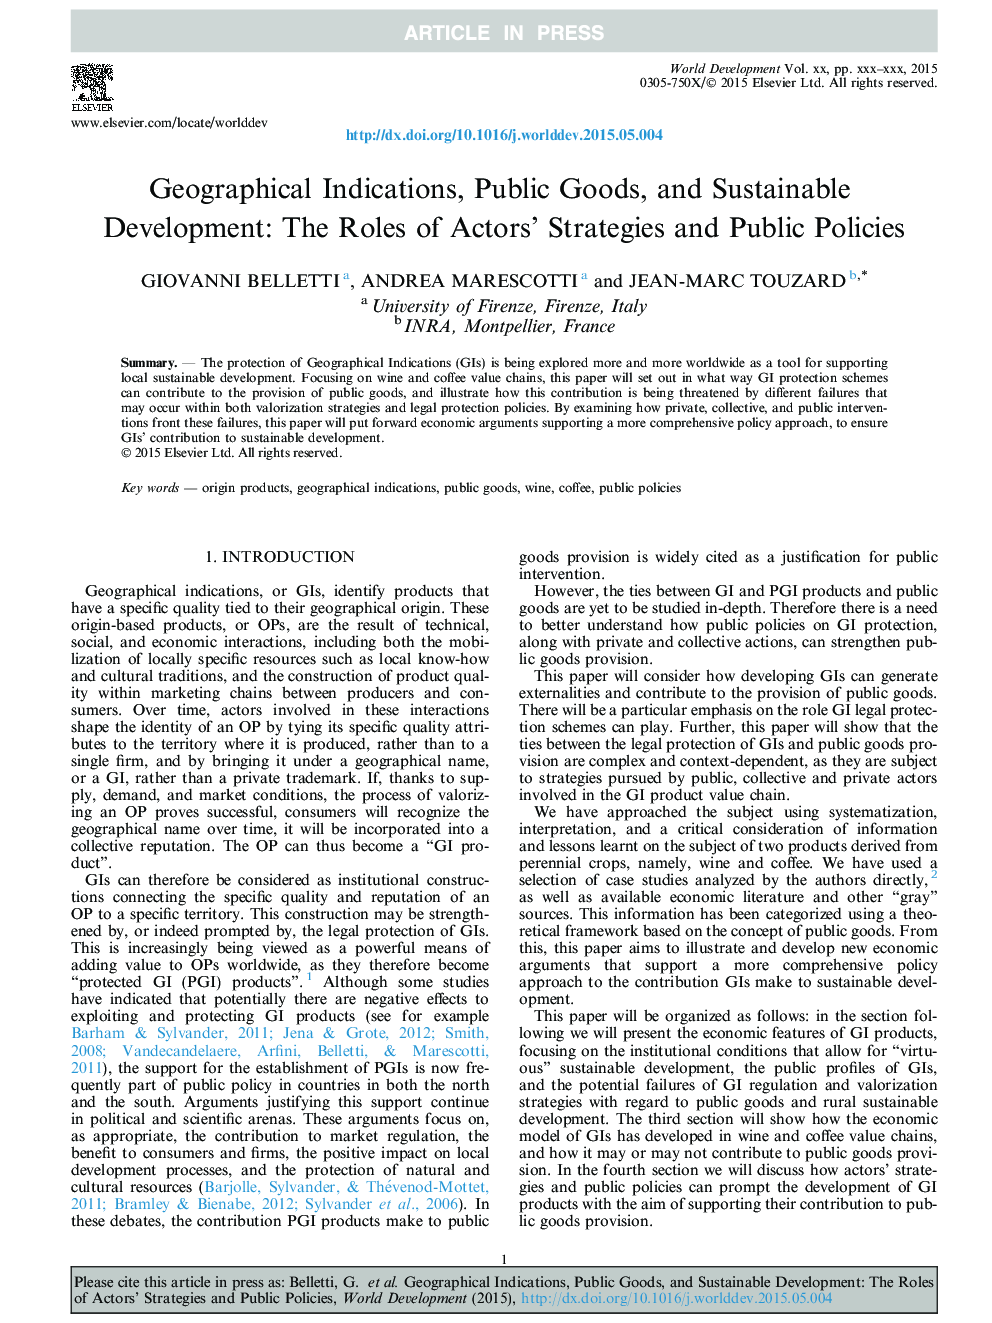 علائم جغرافیایی، محصولات عمومی و توسعه پایدار: نقش استراتژی های بازیگران و سیاست های عمومی 